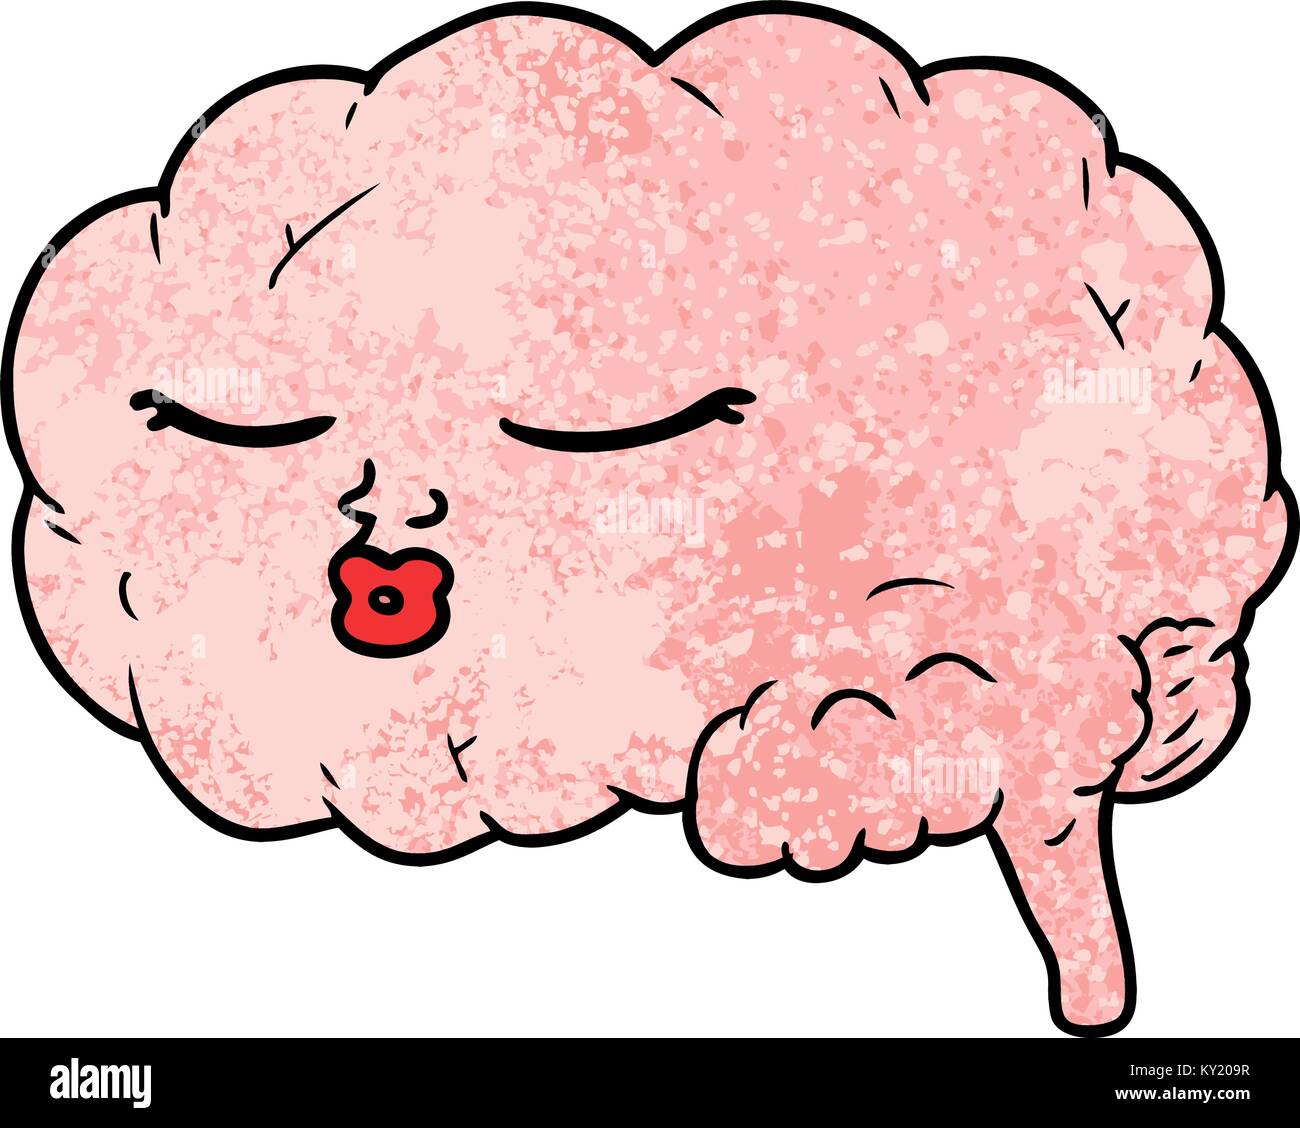 cerebro de dibujos animados Ilustración del Vector